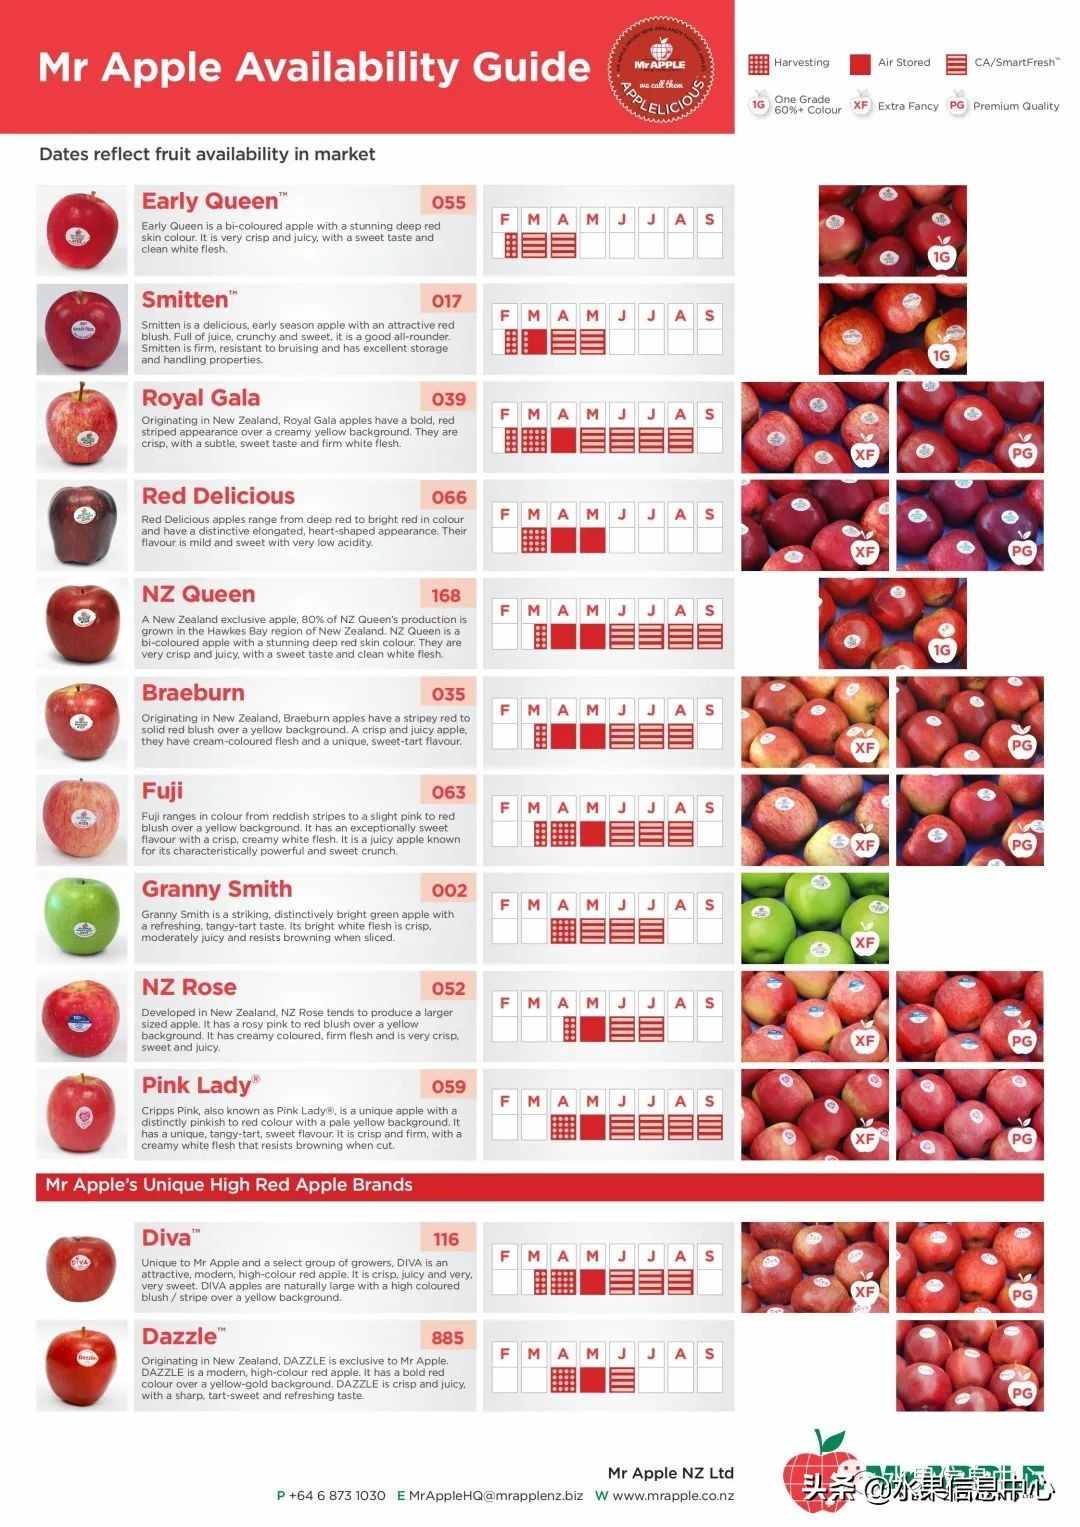 常见的23种苹果的品种产地及成熟时间一览